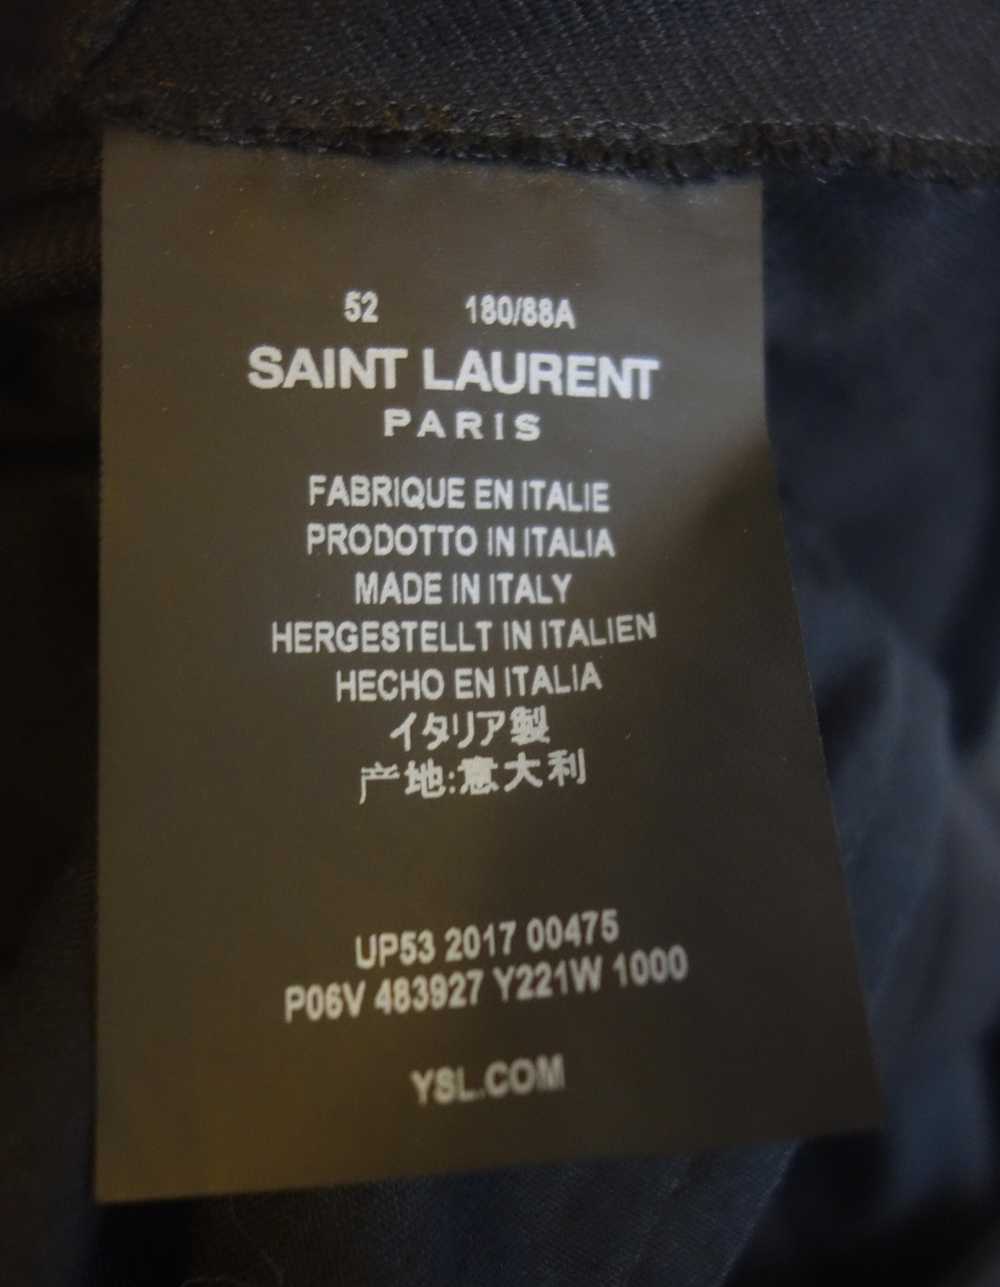 Saint Laurent Paris Saint Laurent Gurkha Trousers - image 7